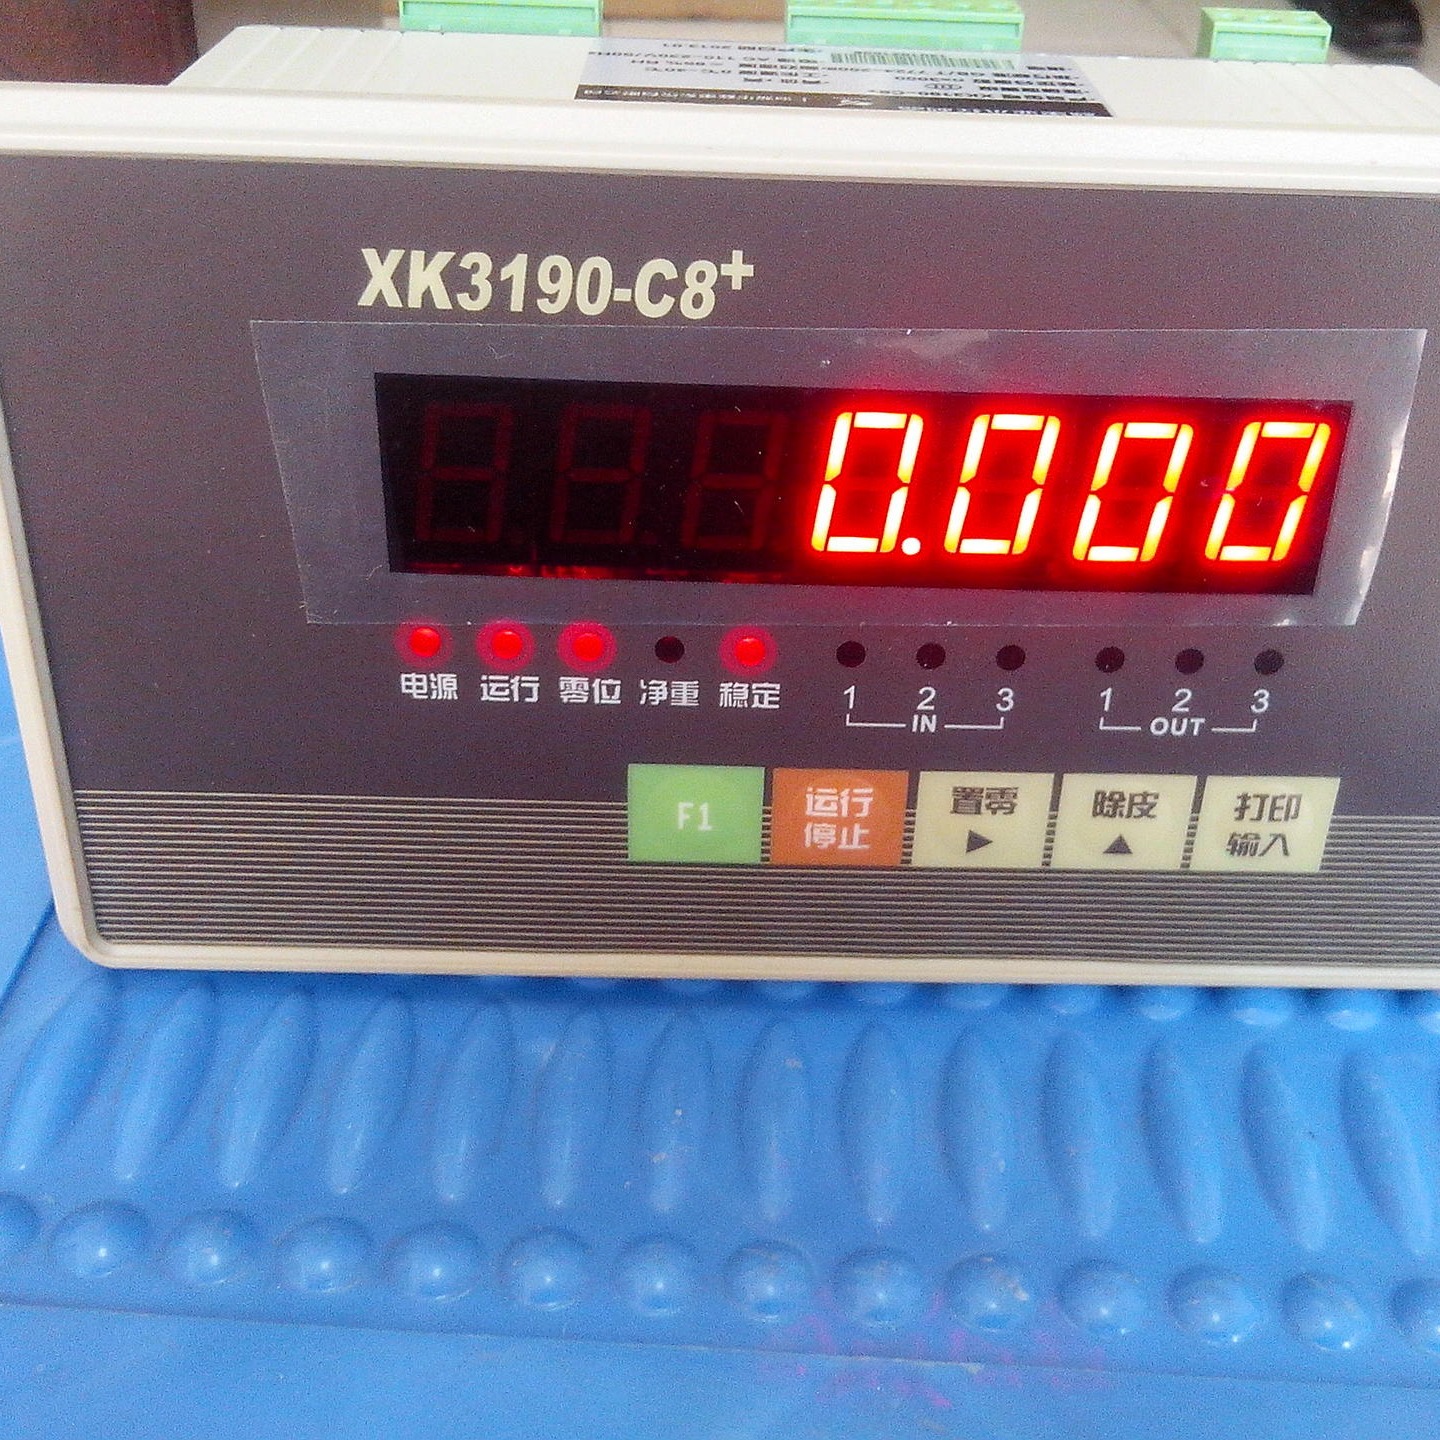 上海耀华XK3190-C8+电子秤带模拟量输出4-20ma 100公斤带继电器信号输出电子秤图片